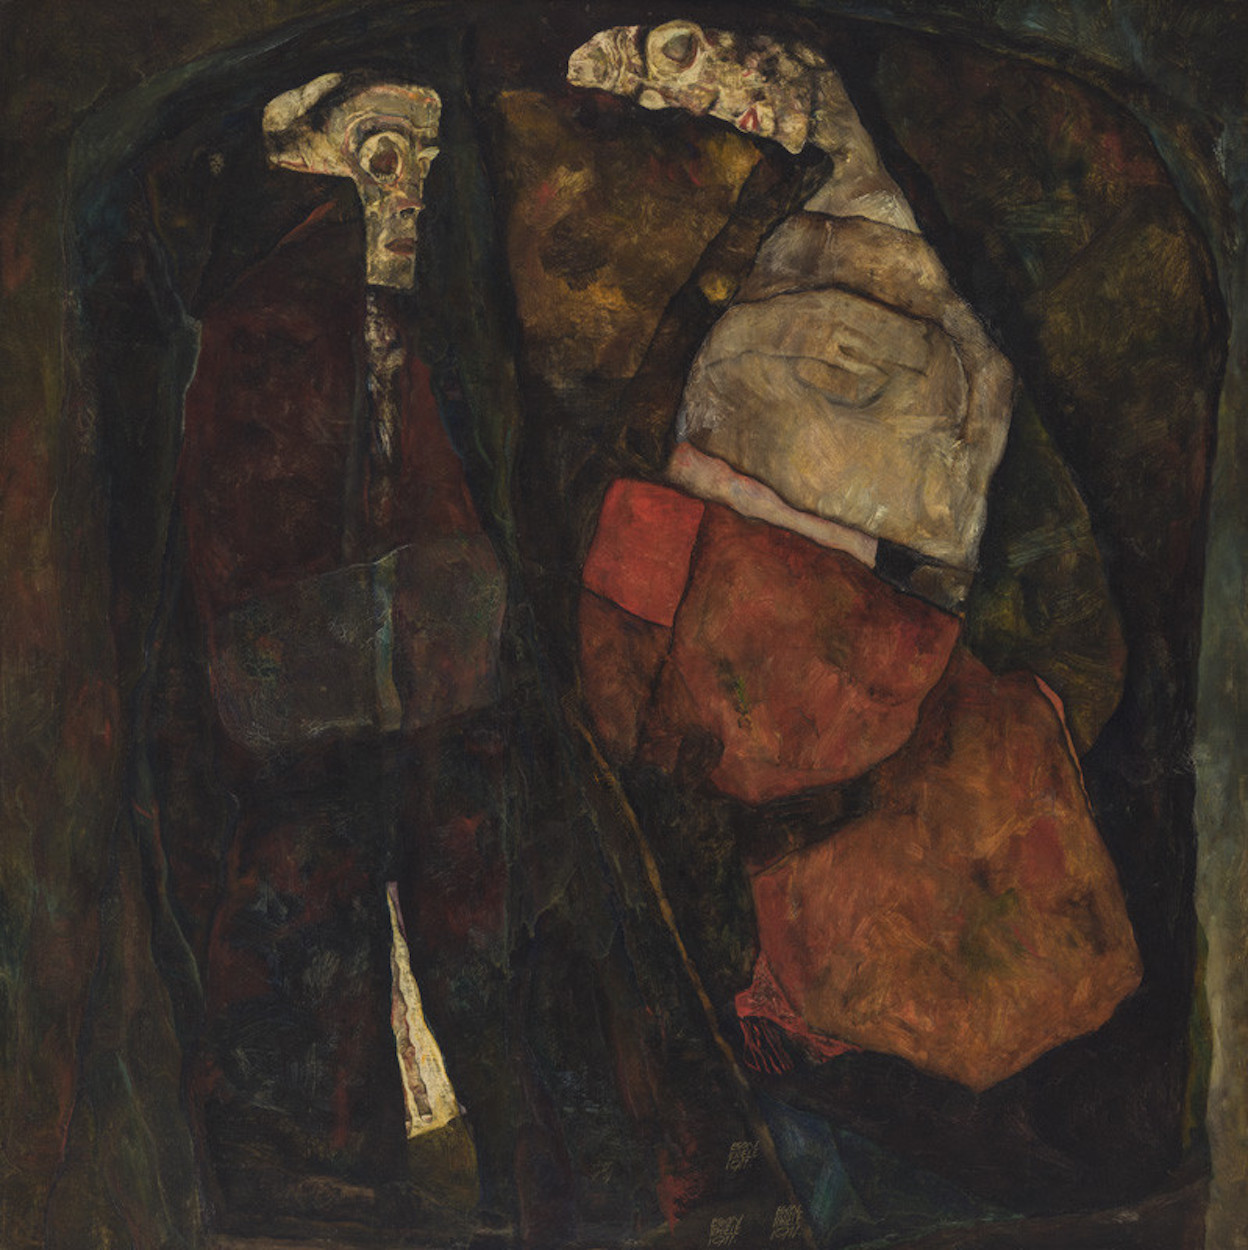 Беременная женщина и смерь (Мать и смерть) by Egon Schiele - 1911 - 100 x 100 см 